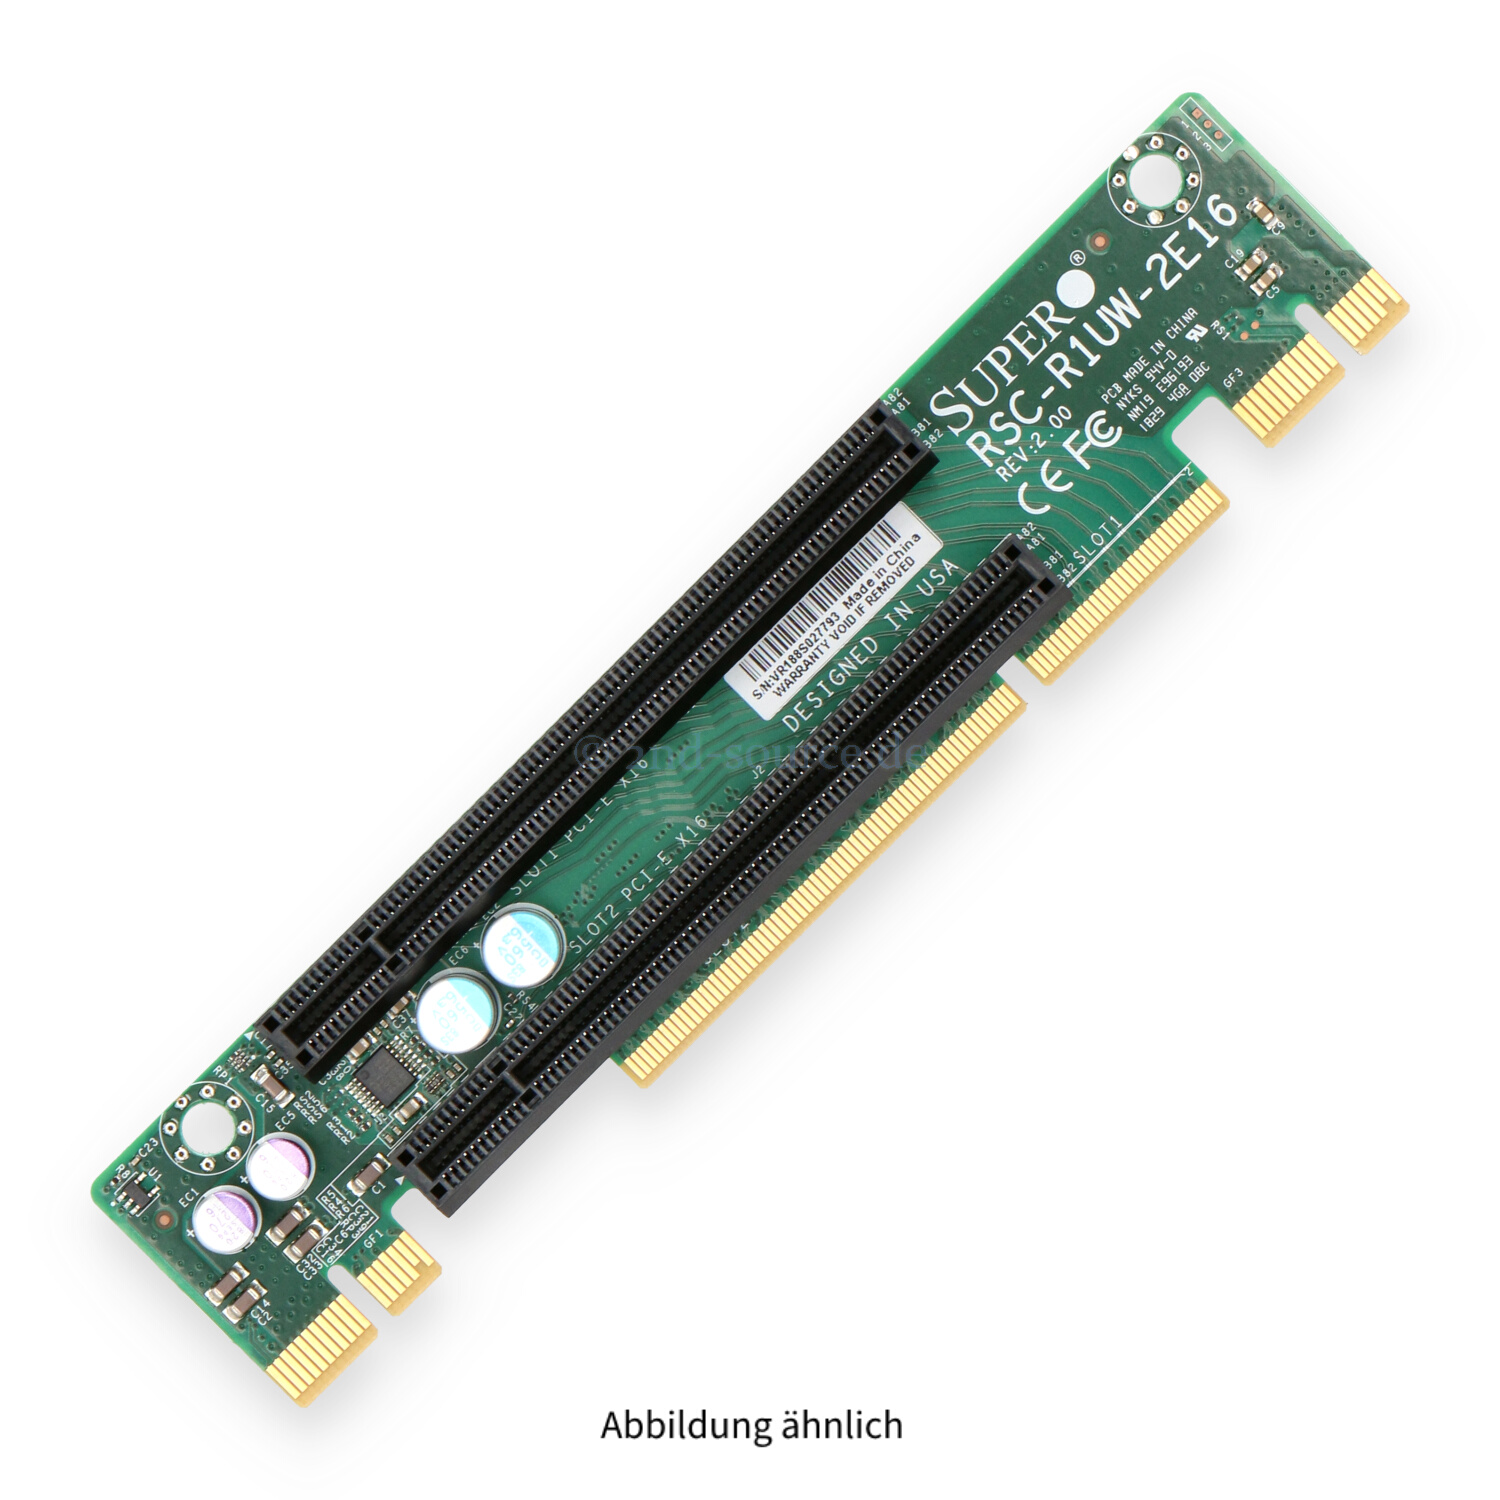 Supermicro 2x PCIe 3.0 x16 Riser Card RSC-R1UW-2E16